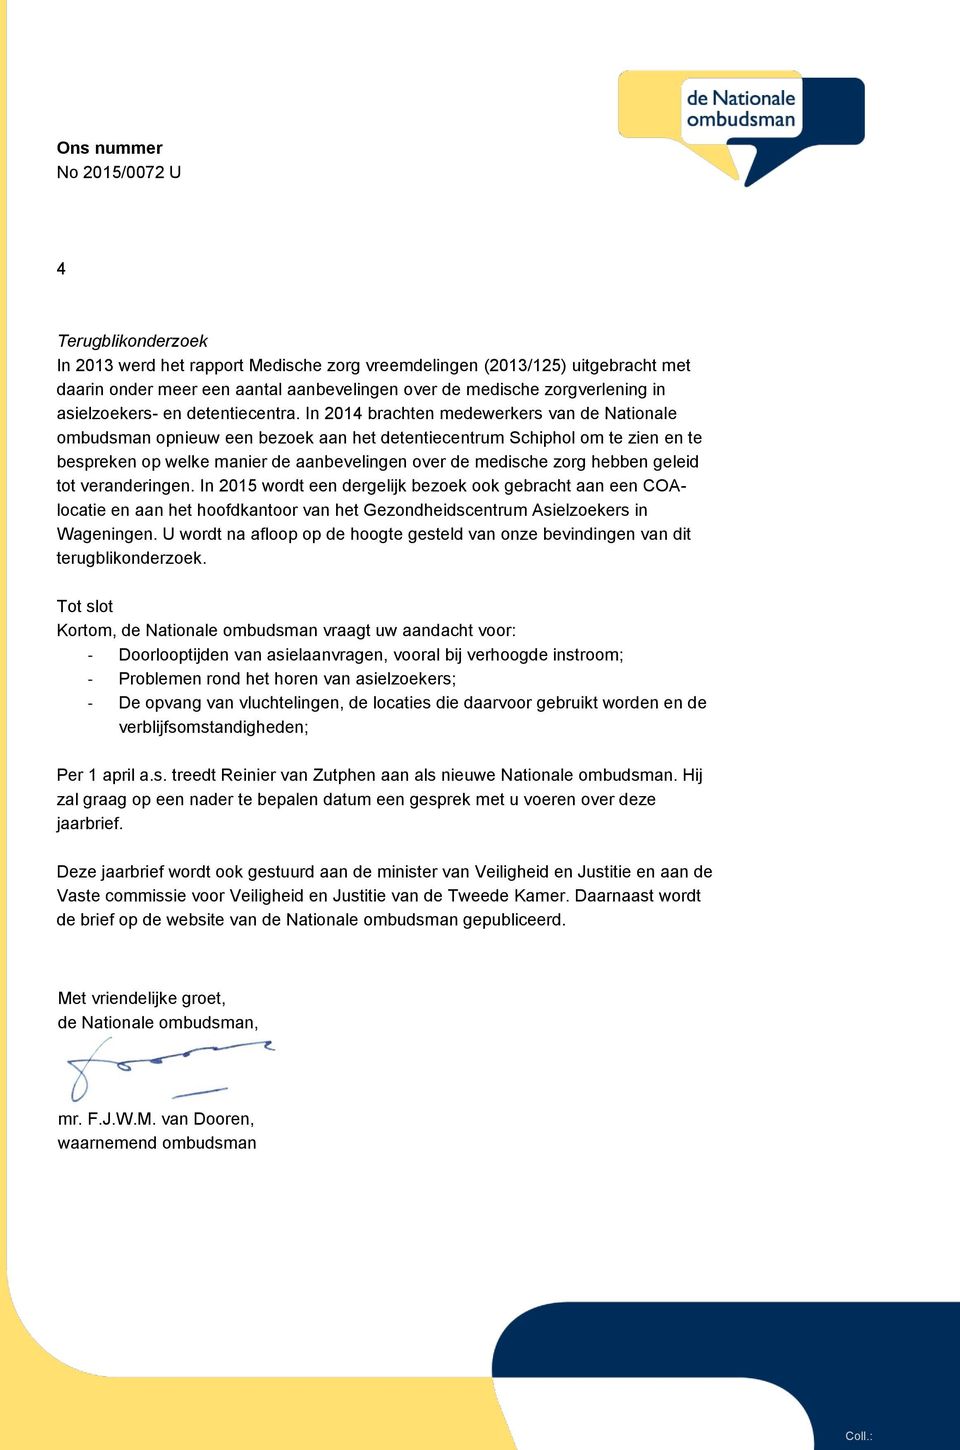 In 2014 brachten medewerkers van de Nationale ombudsman opnieuw een bezoek aan het detentiecentrum Schiphol om te zien en te bespreken op welke manier de aanbevelingen over de medische zorg hebben